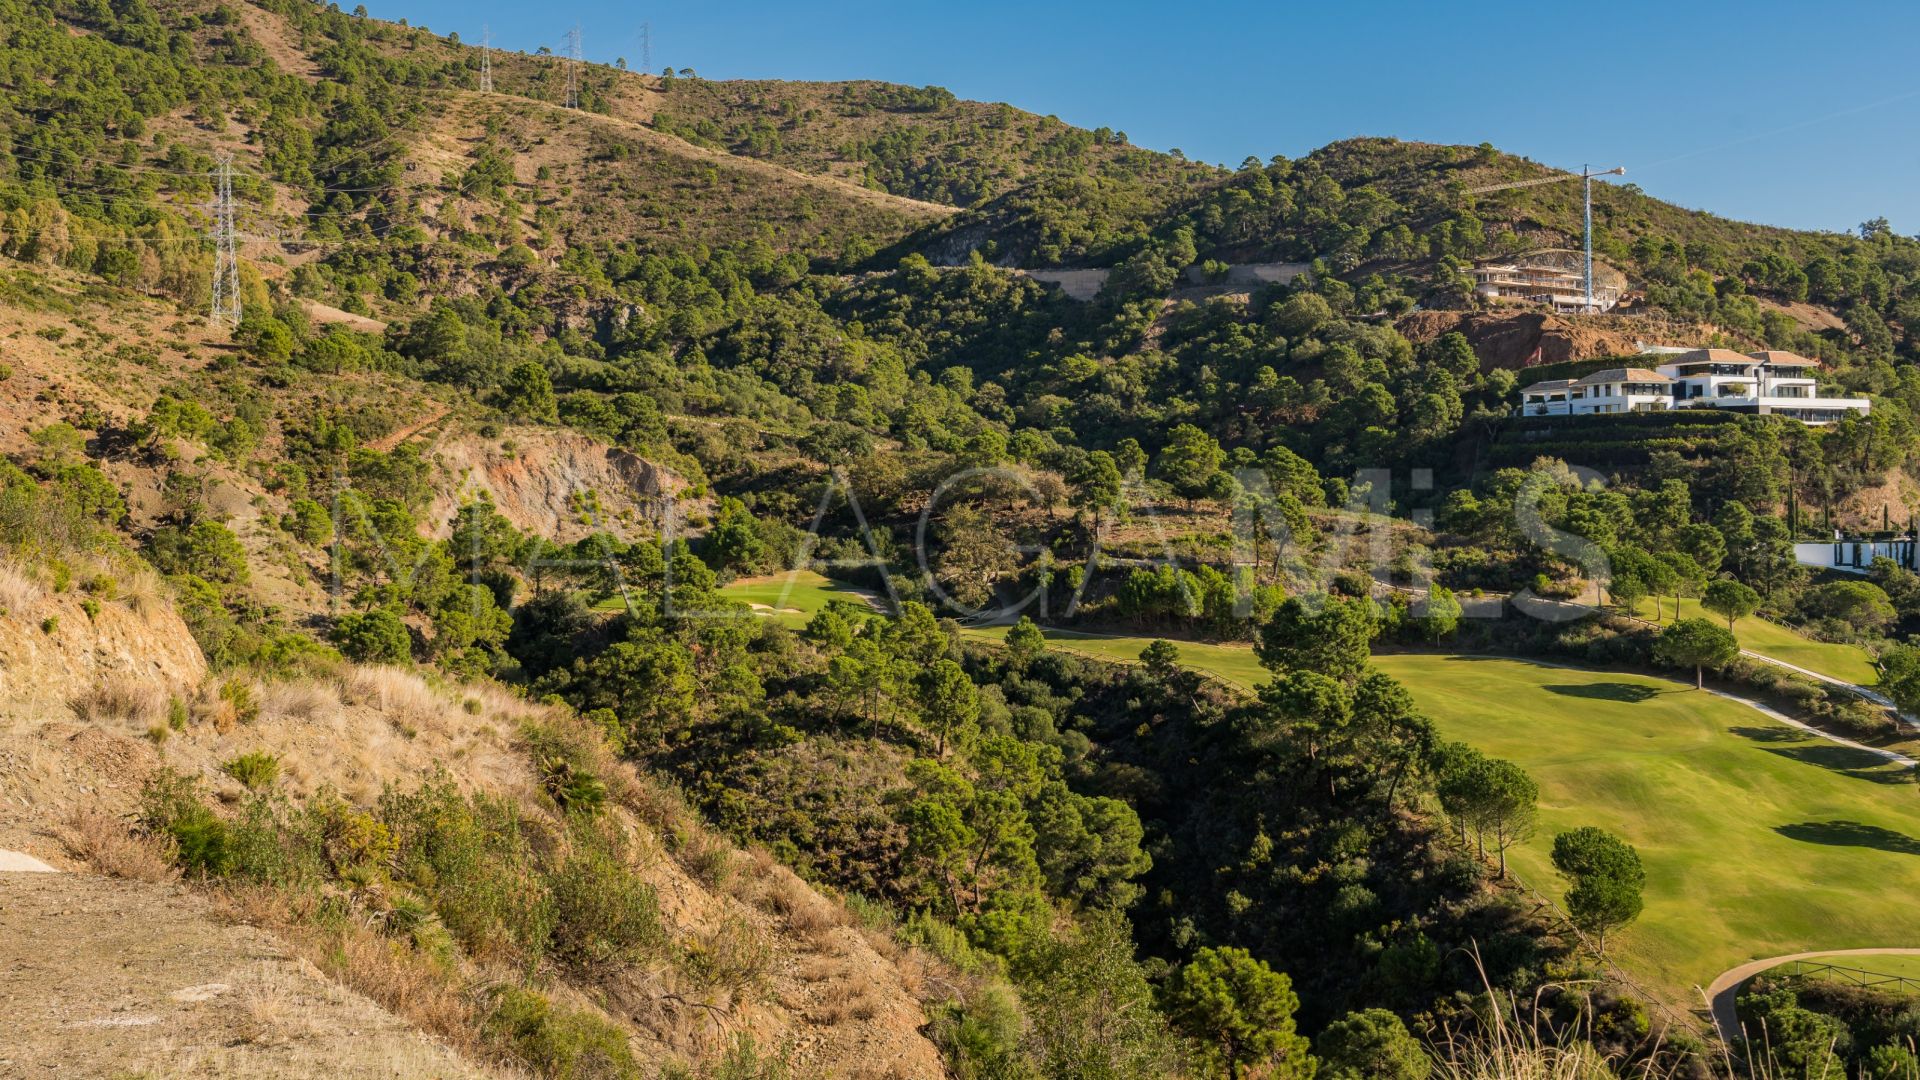 Terrain for sale in La Zagaleta